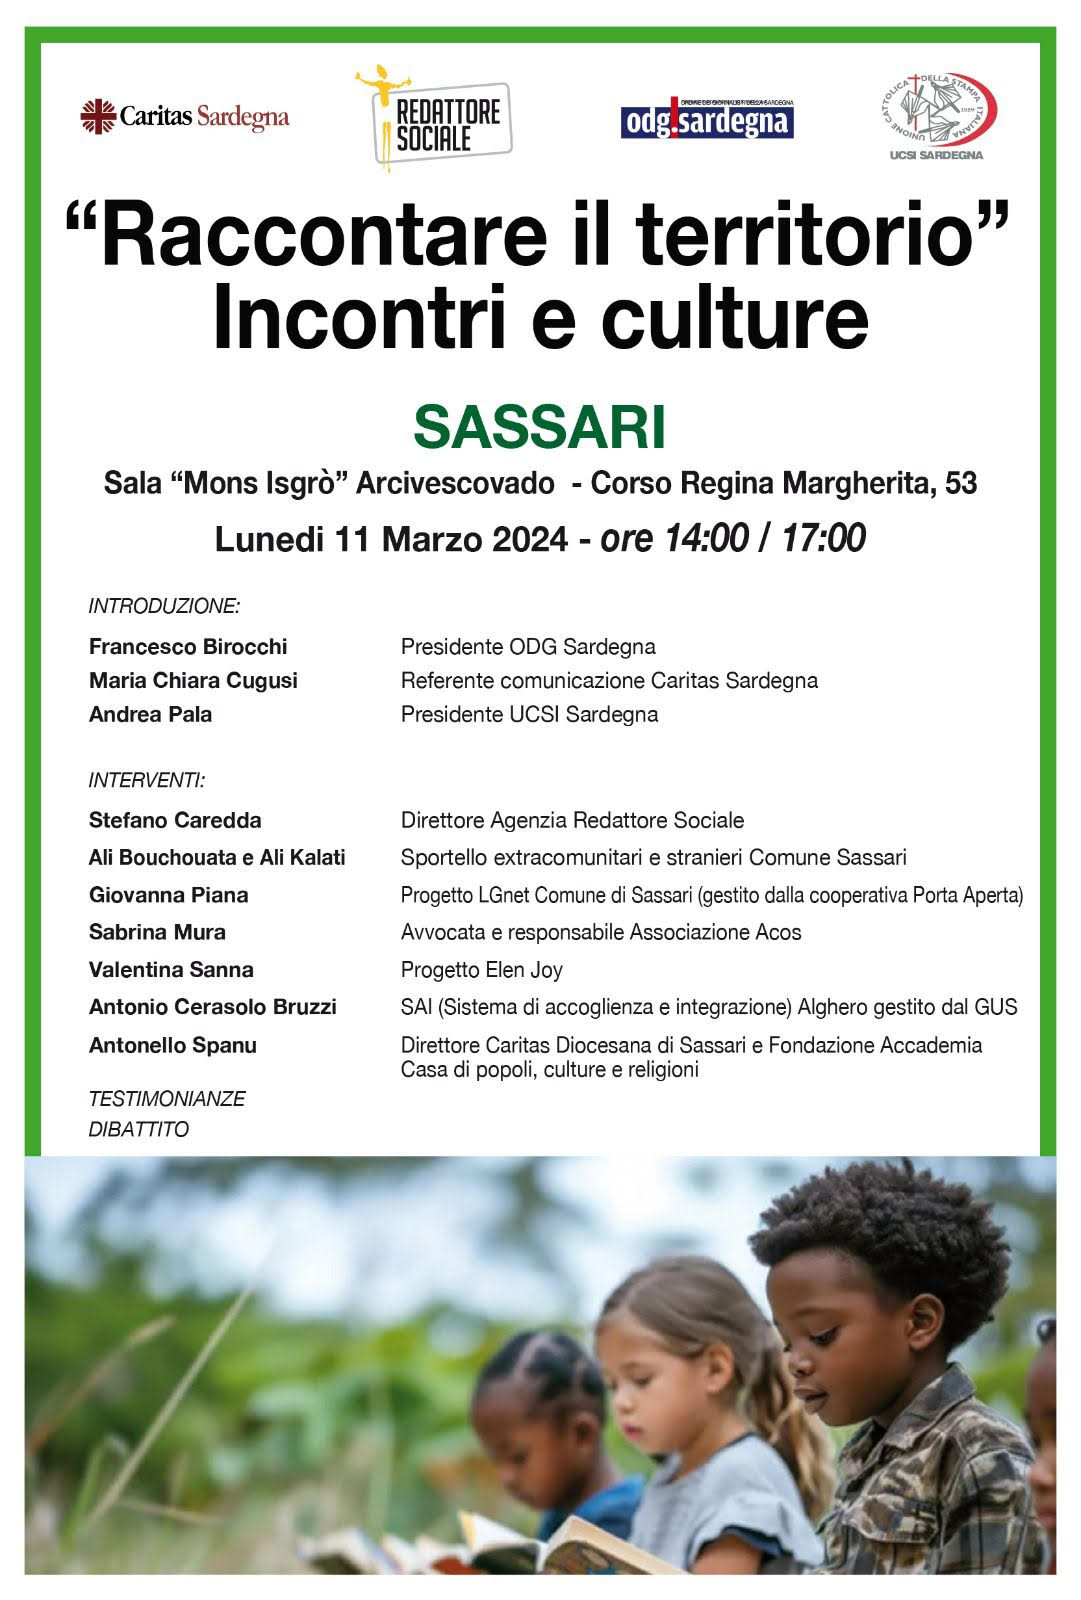 Al via la II edizione del ciclo di seminari “Raccontare il territorio”: l’11 marzo a Sassari “Incontri e culture”